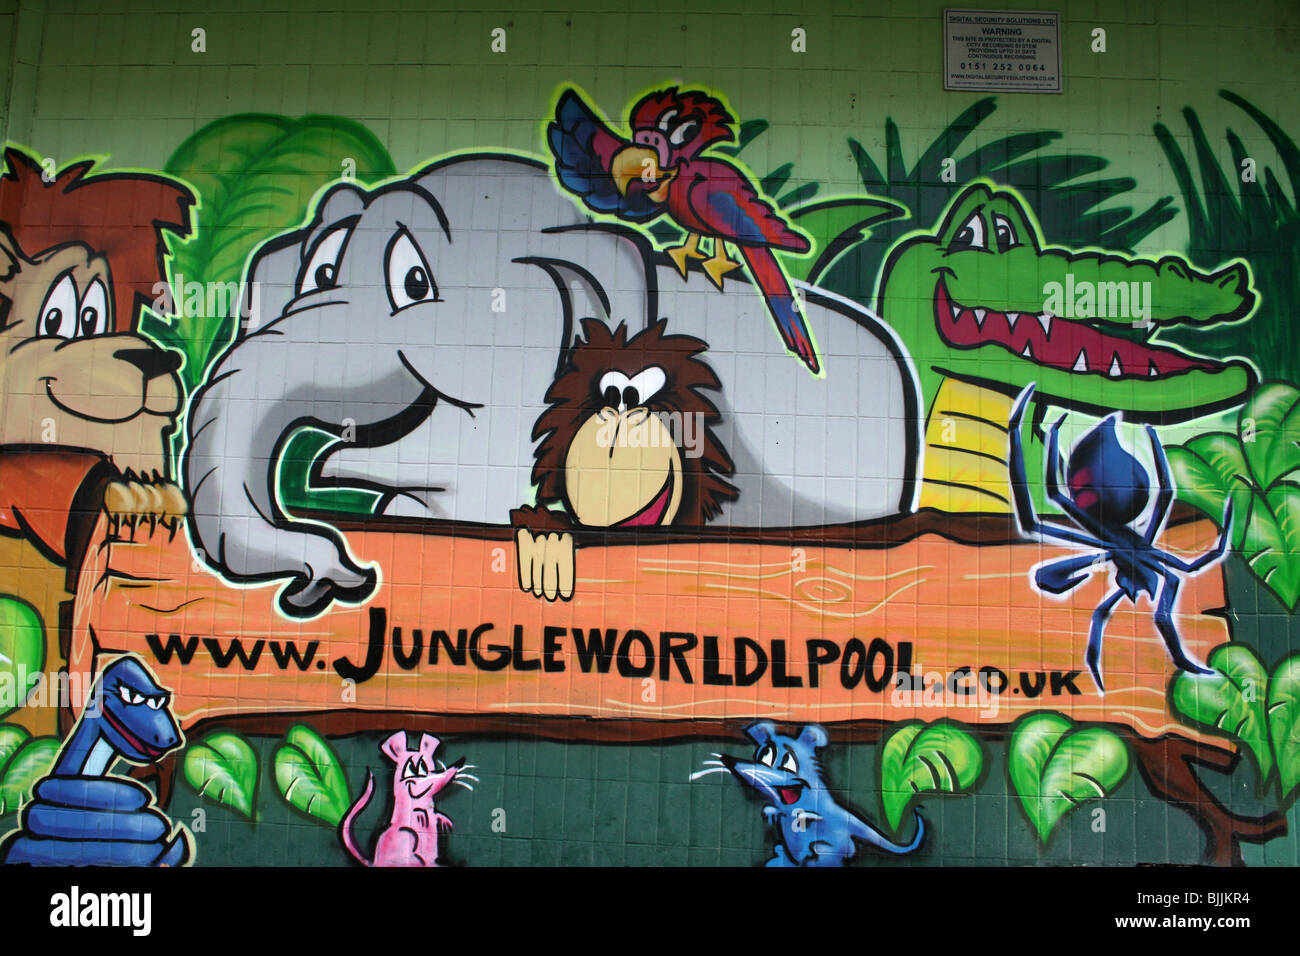 Jungleworld graffiti artista Stok, Liverpool, Merseyside, Regno Unito Foto Stock